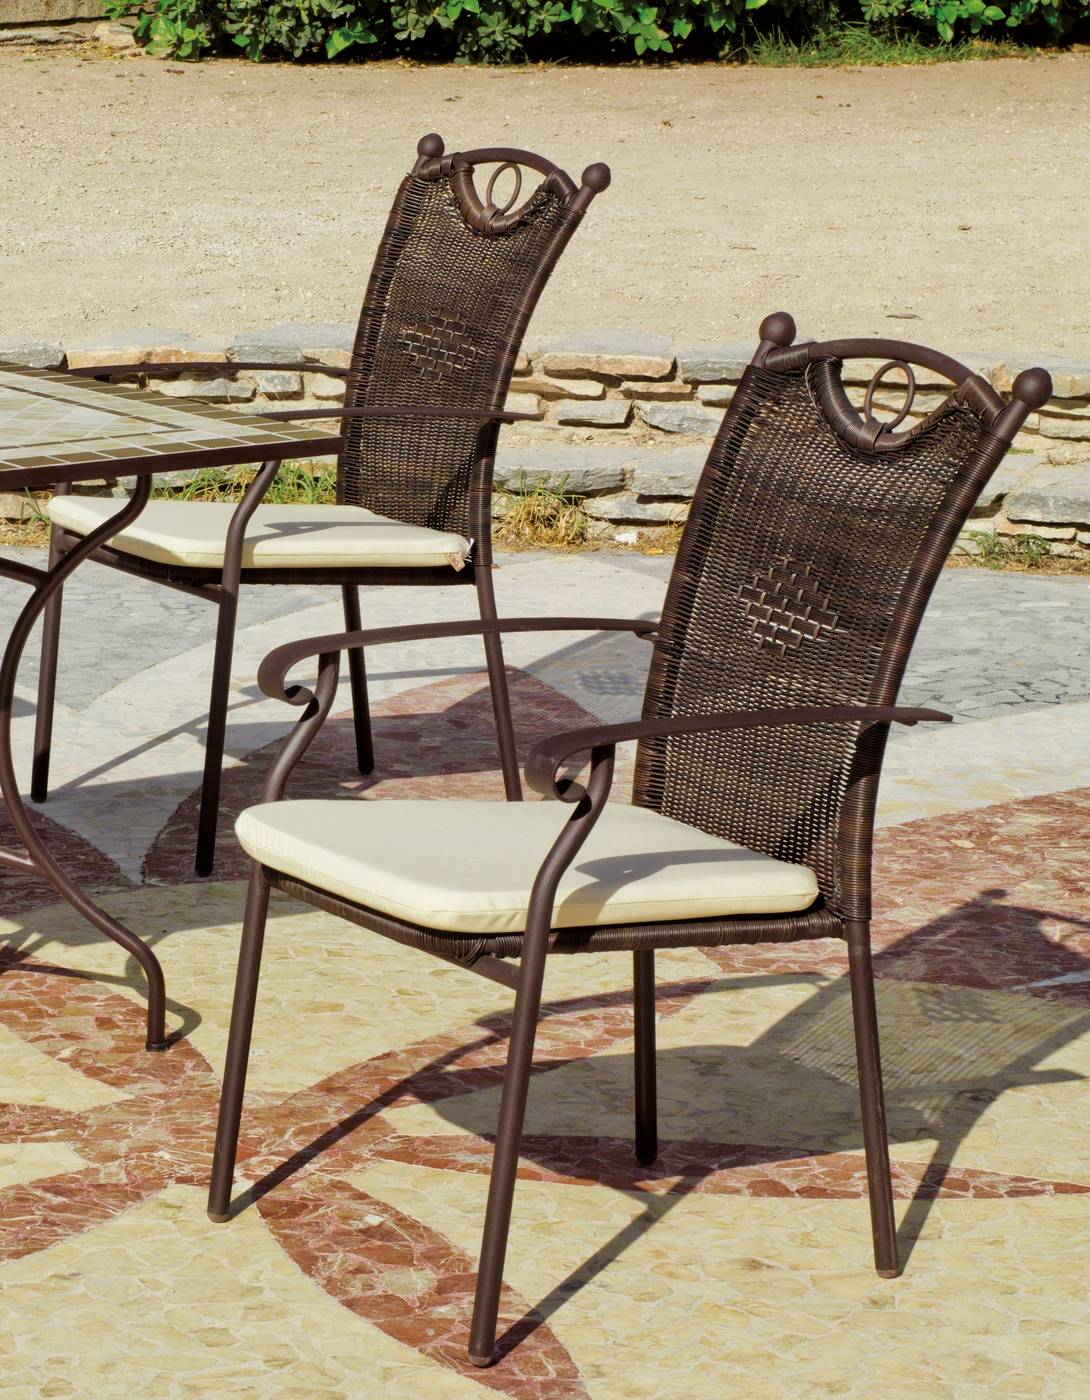 Set Mosaico Roland/Beldey-200 - Conjunto para terraza o jardín de forja color bronce: 1 mesa + 6 sillones + 6 cojines. Mesa válida para 8 sillones.